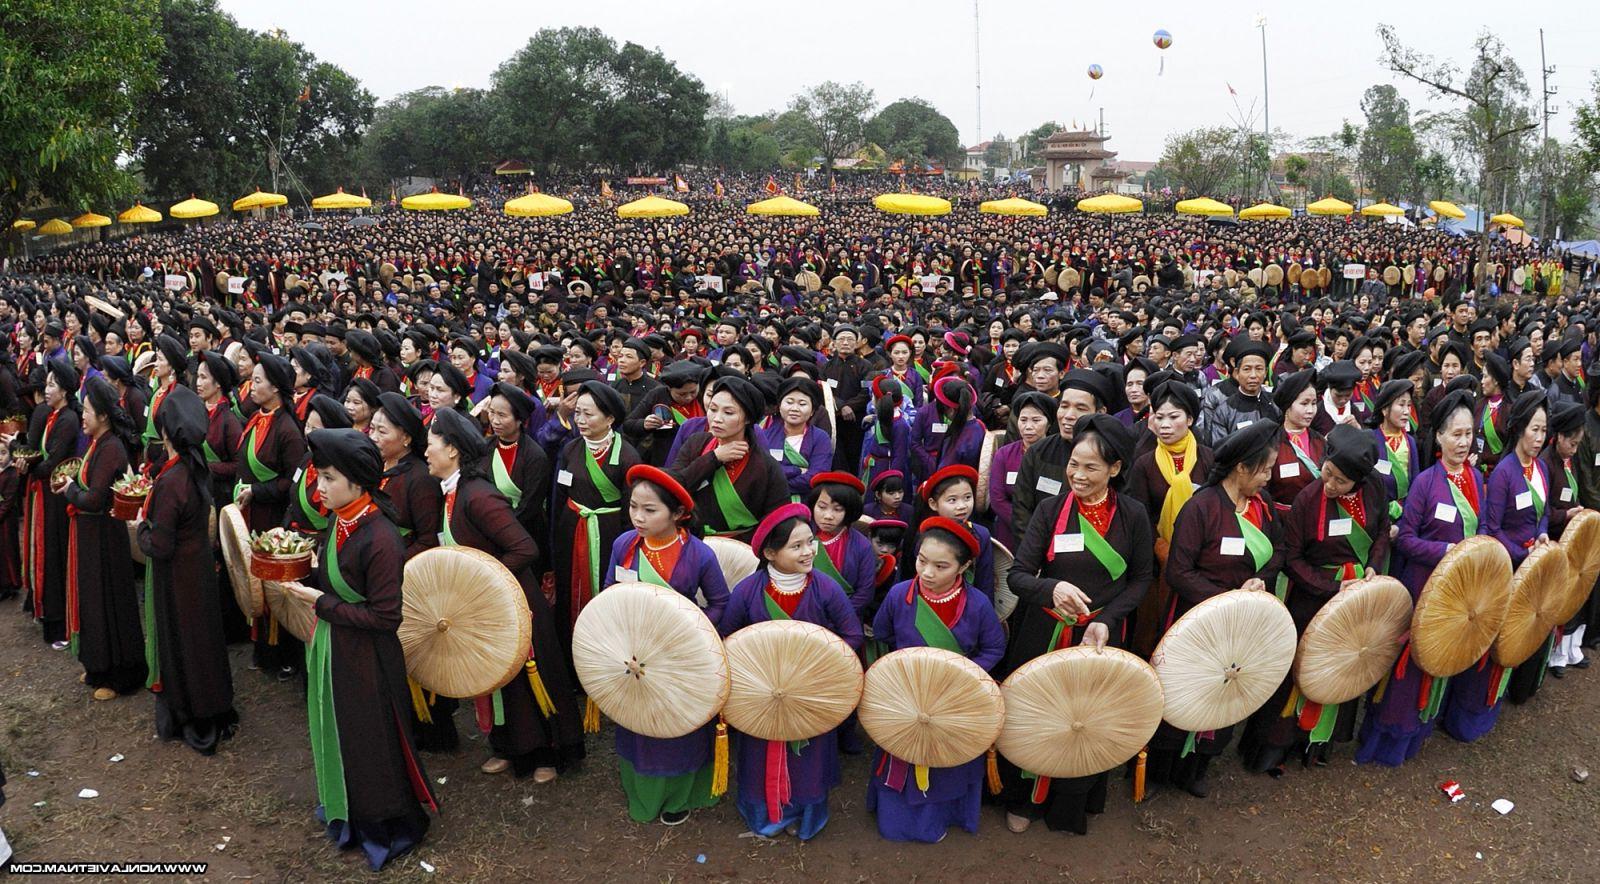 Điệu hát “Khách đến chơi nhà” đạt kỷ lục “nhiều người mặc trang phục quan họ và cùng hát dân ca quan họ Bắc Ninh nhất”